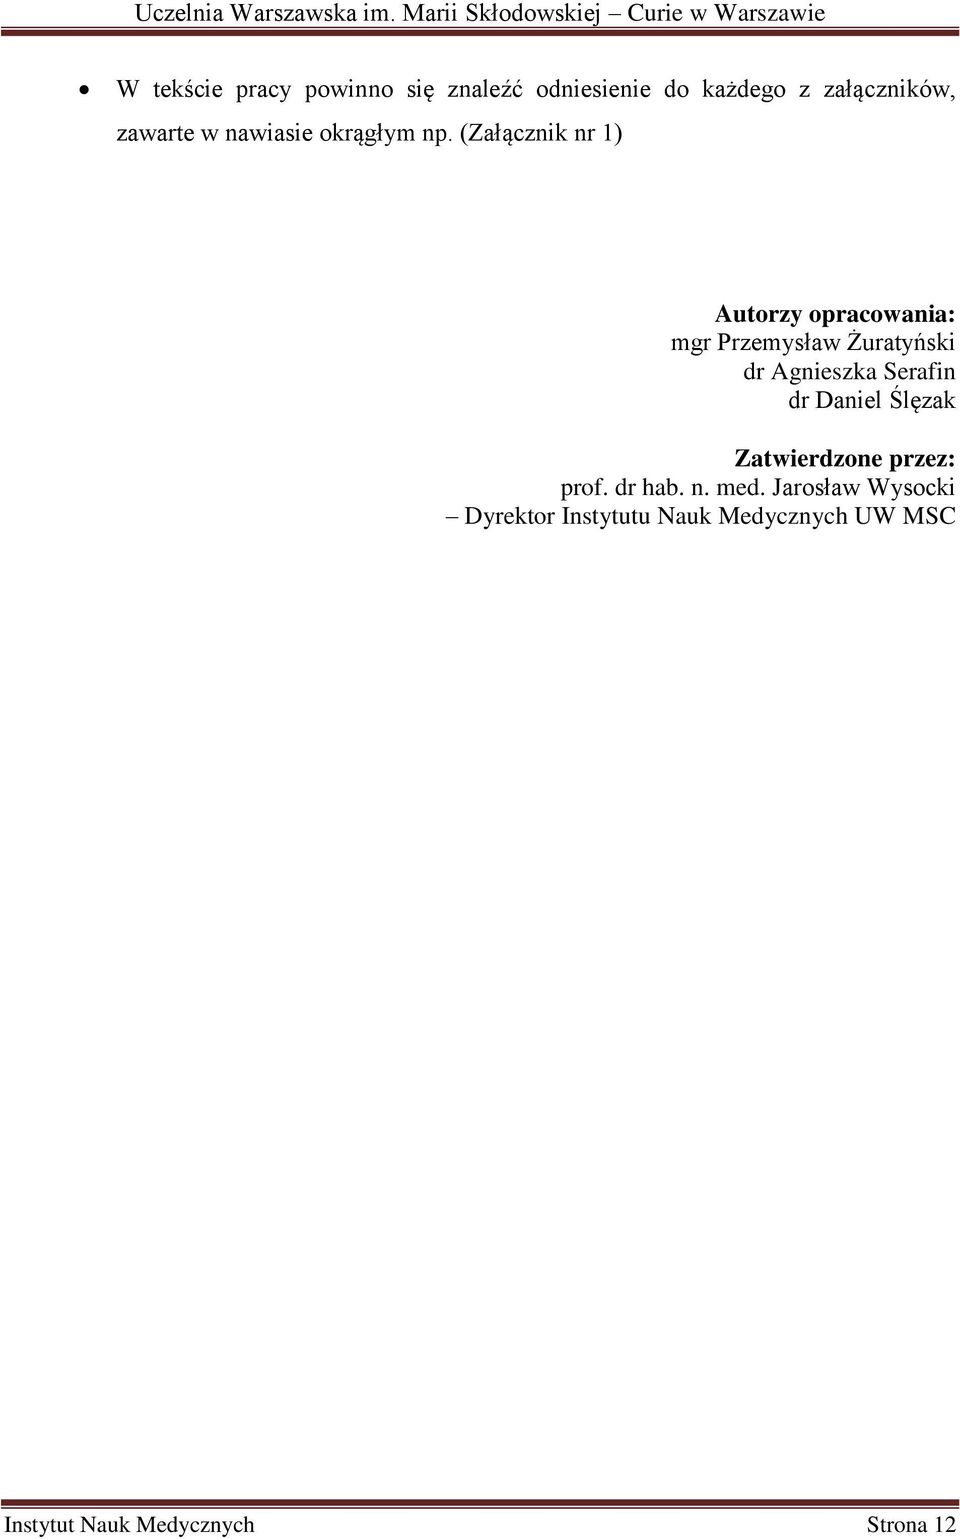 (Załącznik nr 1) Autorzy opracowania: mgr Przemysław Żuratyński dr Agnieszka Serafin